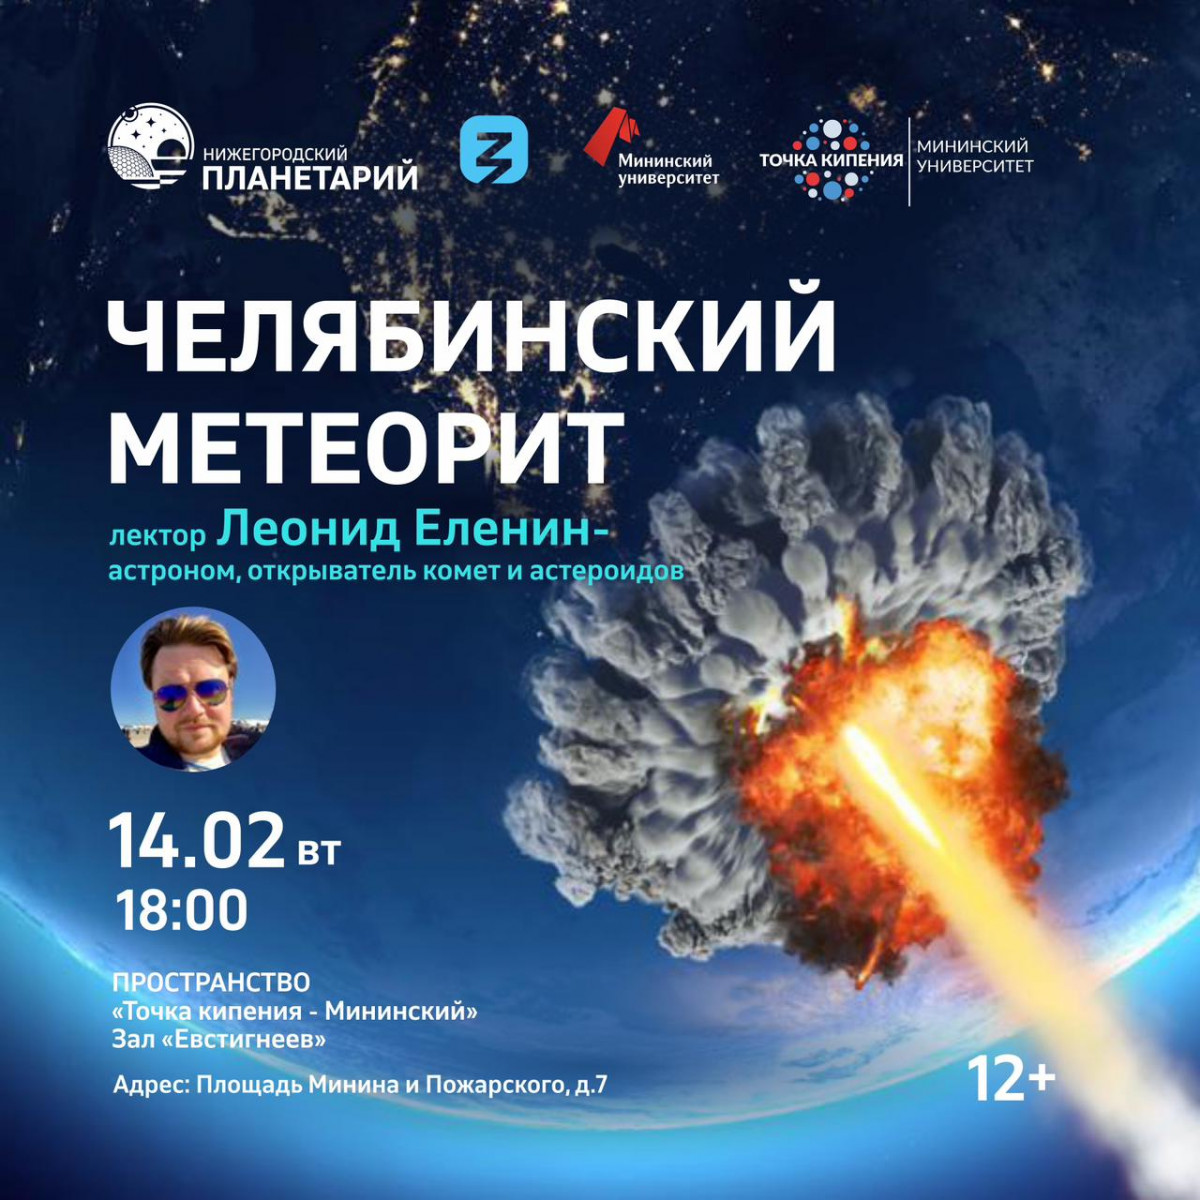 Нижегородский планетарий отметит 10-летие падения Челябинского метеорита